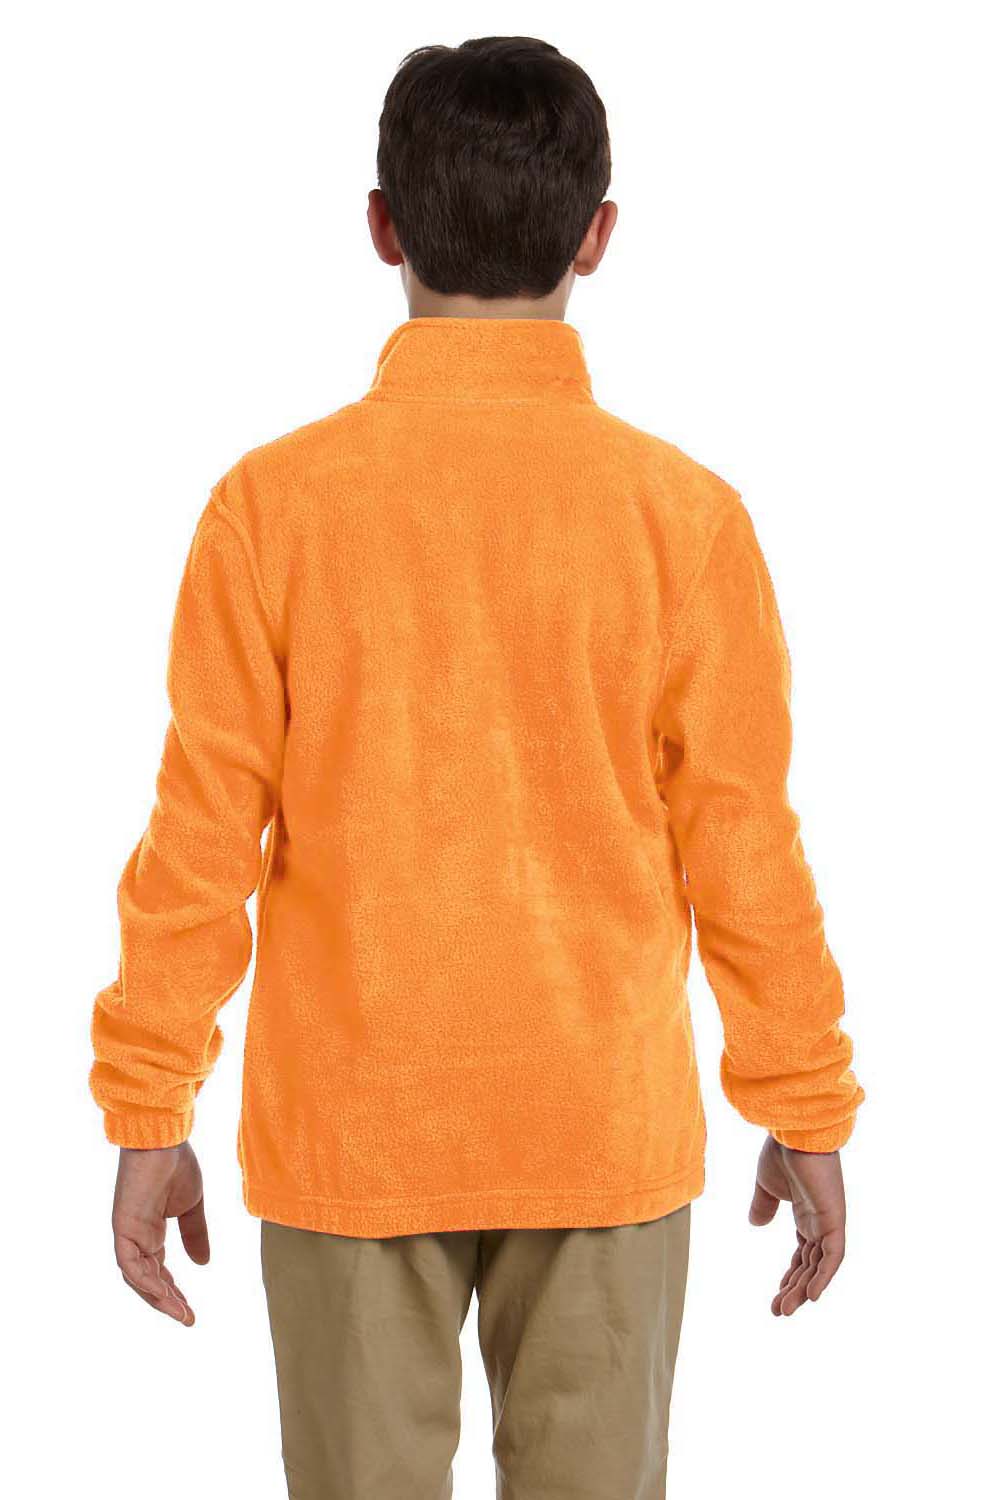 Harriton M990Y Youth Full Zip Fleece Jacket Safety Orange Back